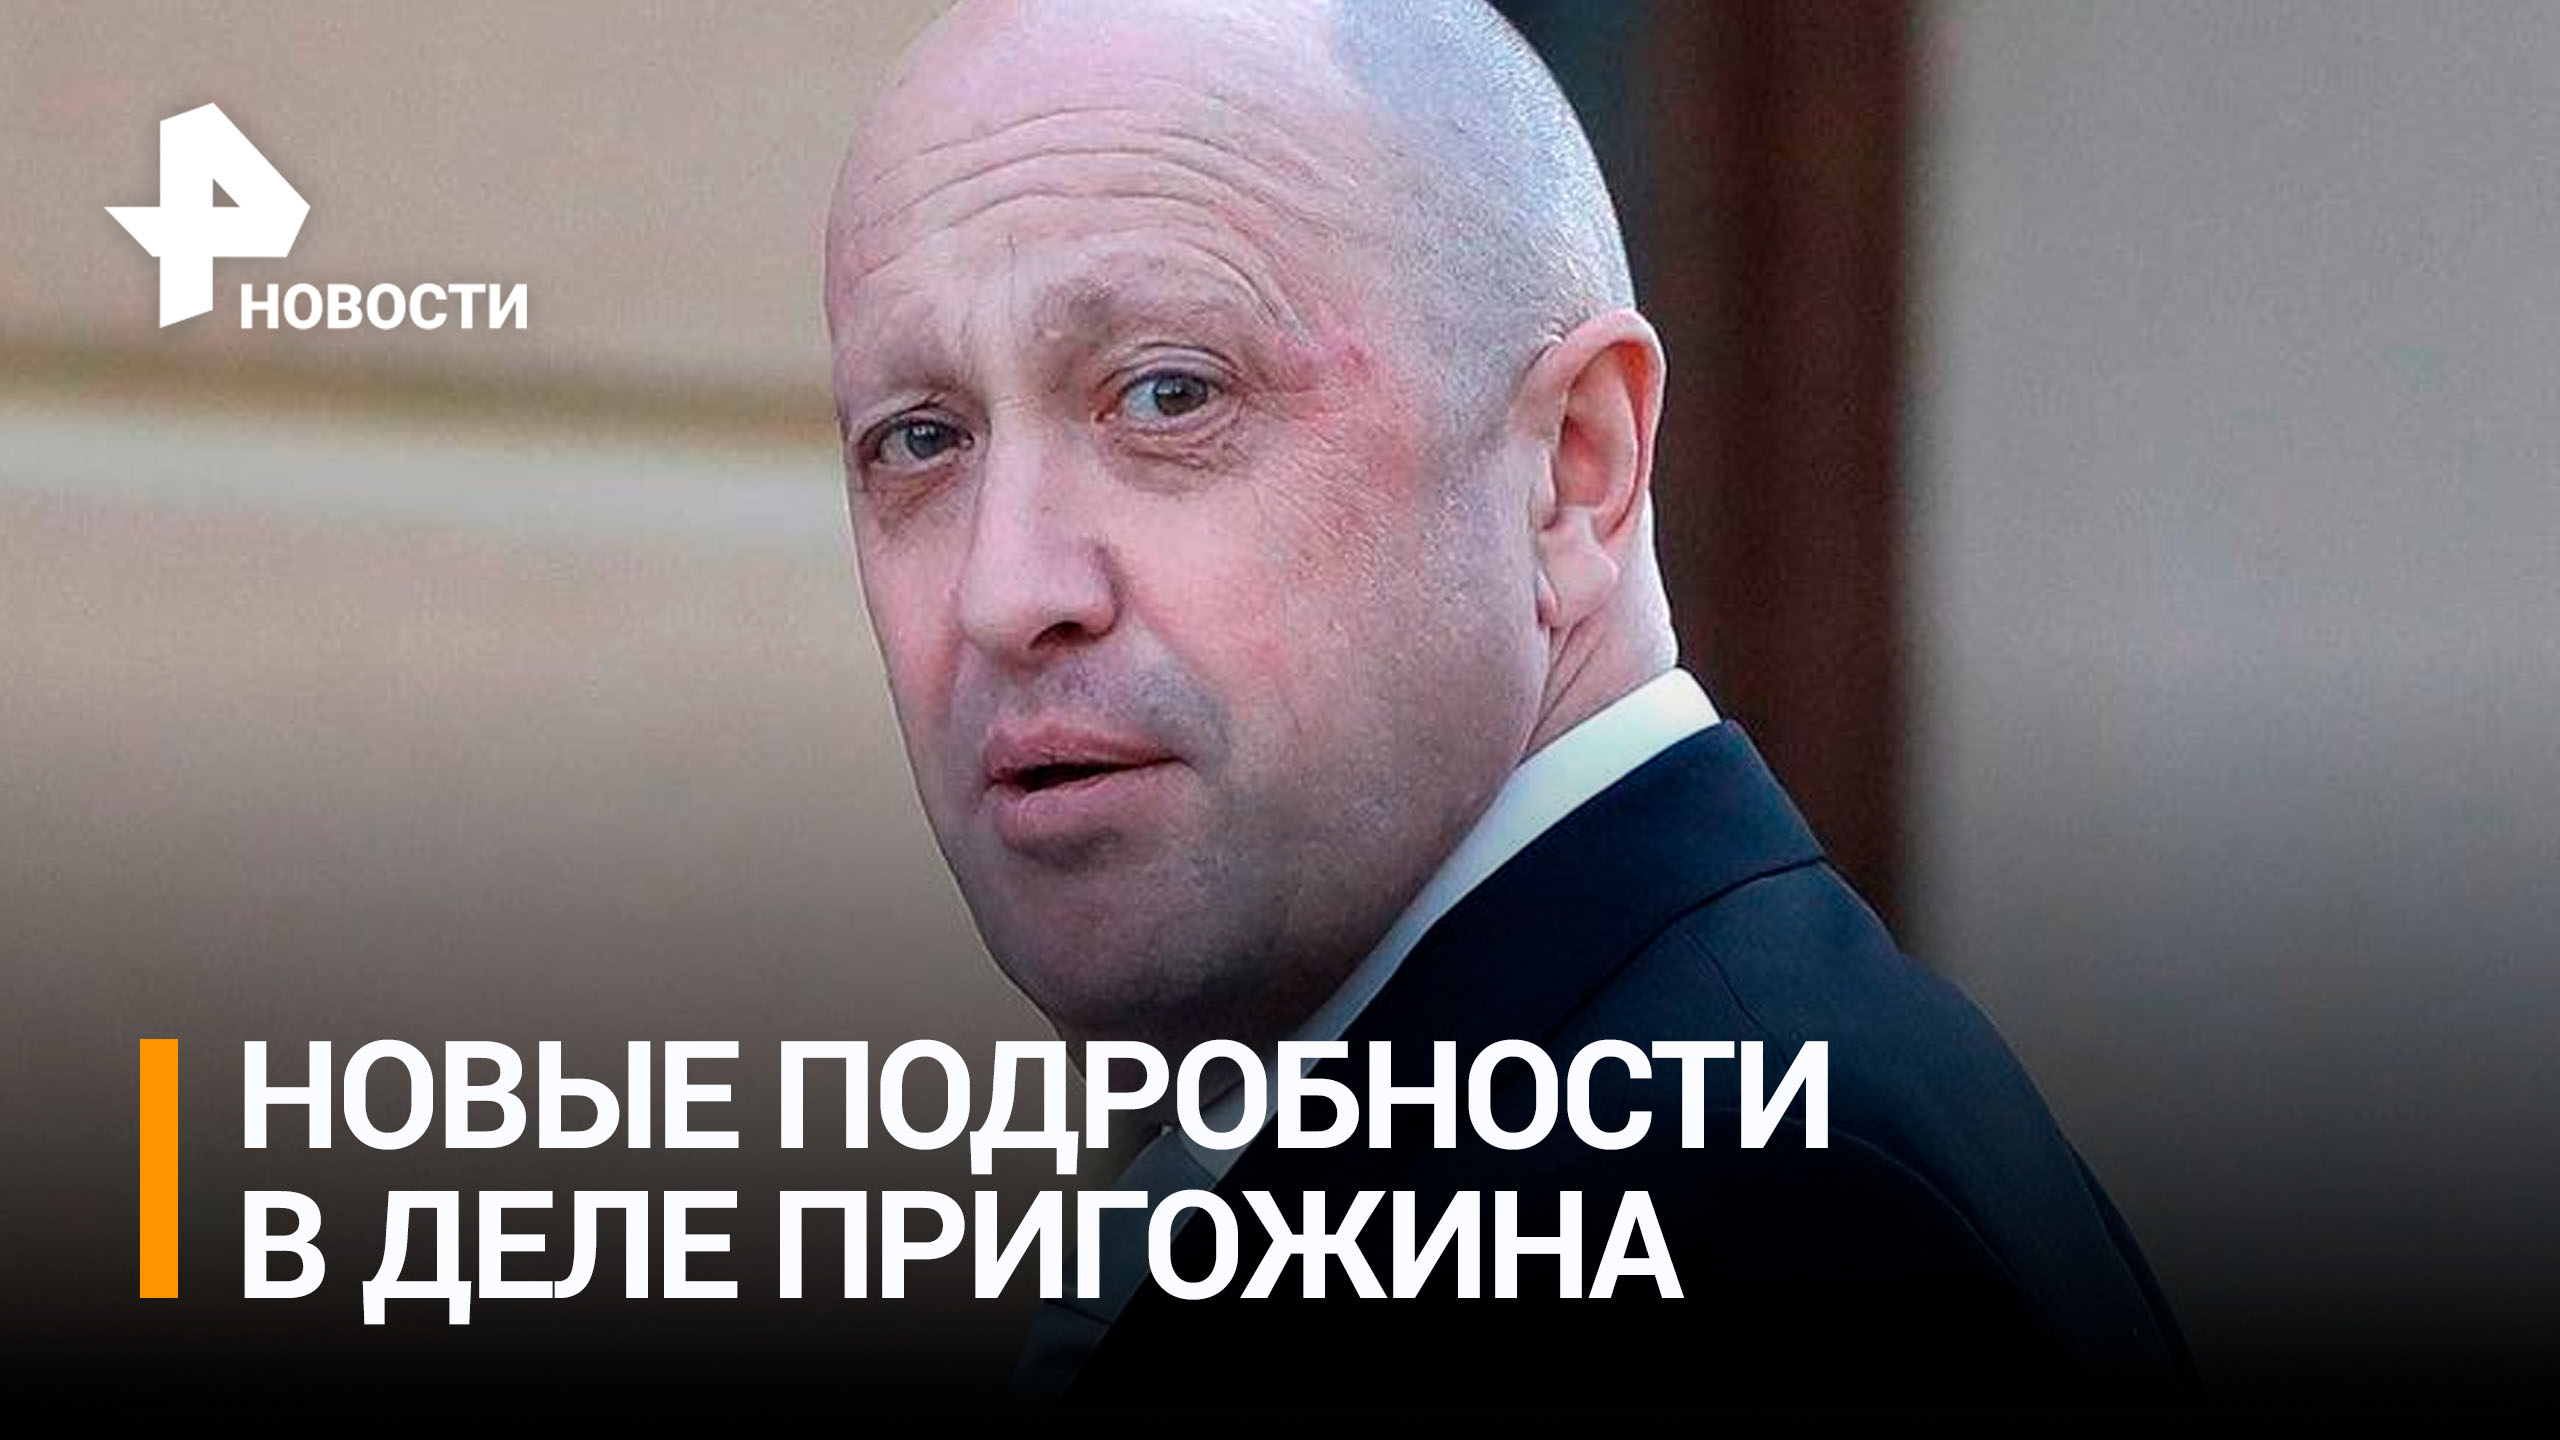 Бывшие сотрудники Пригожина обвинили его в махинациях / РЕН Новости